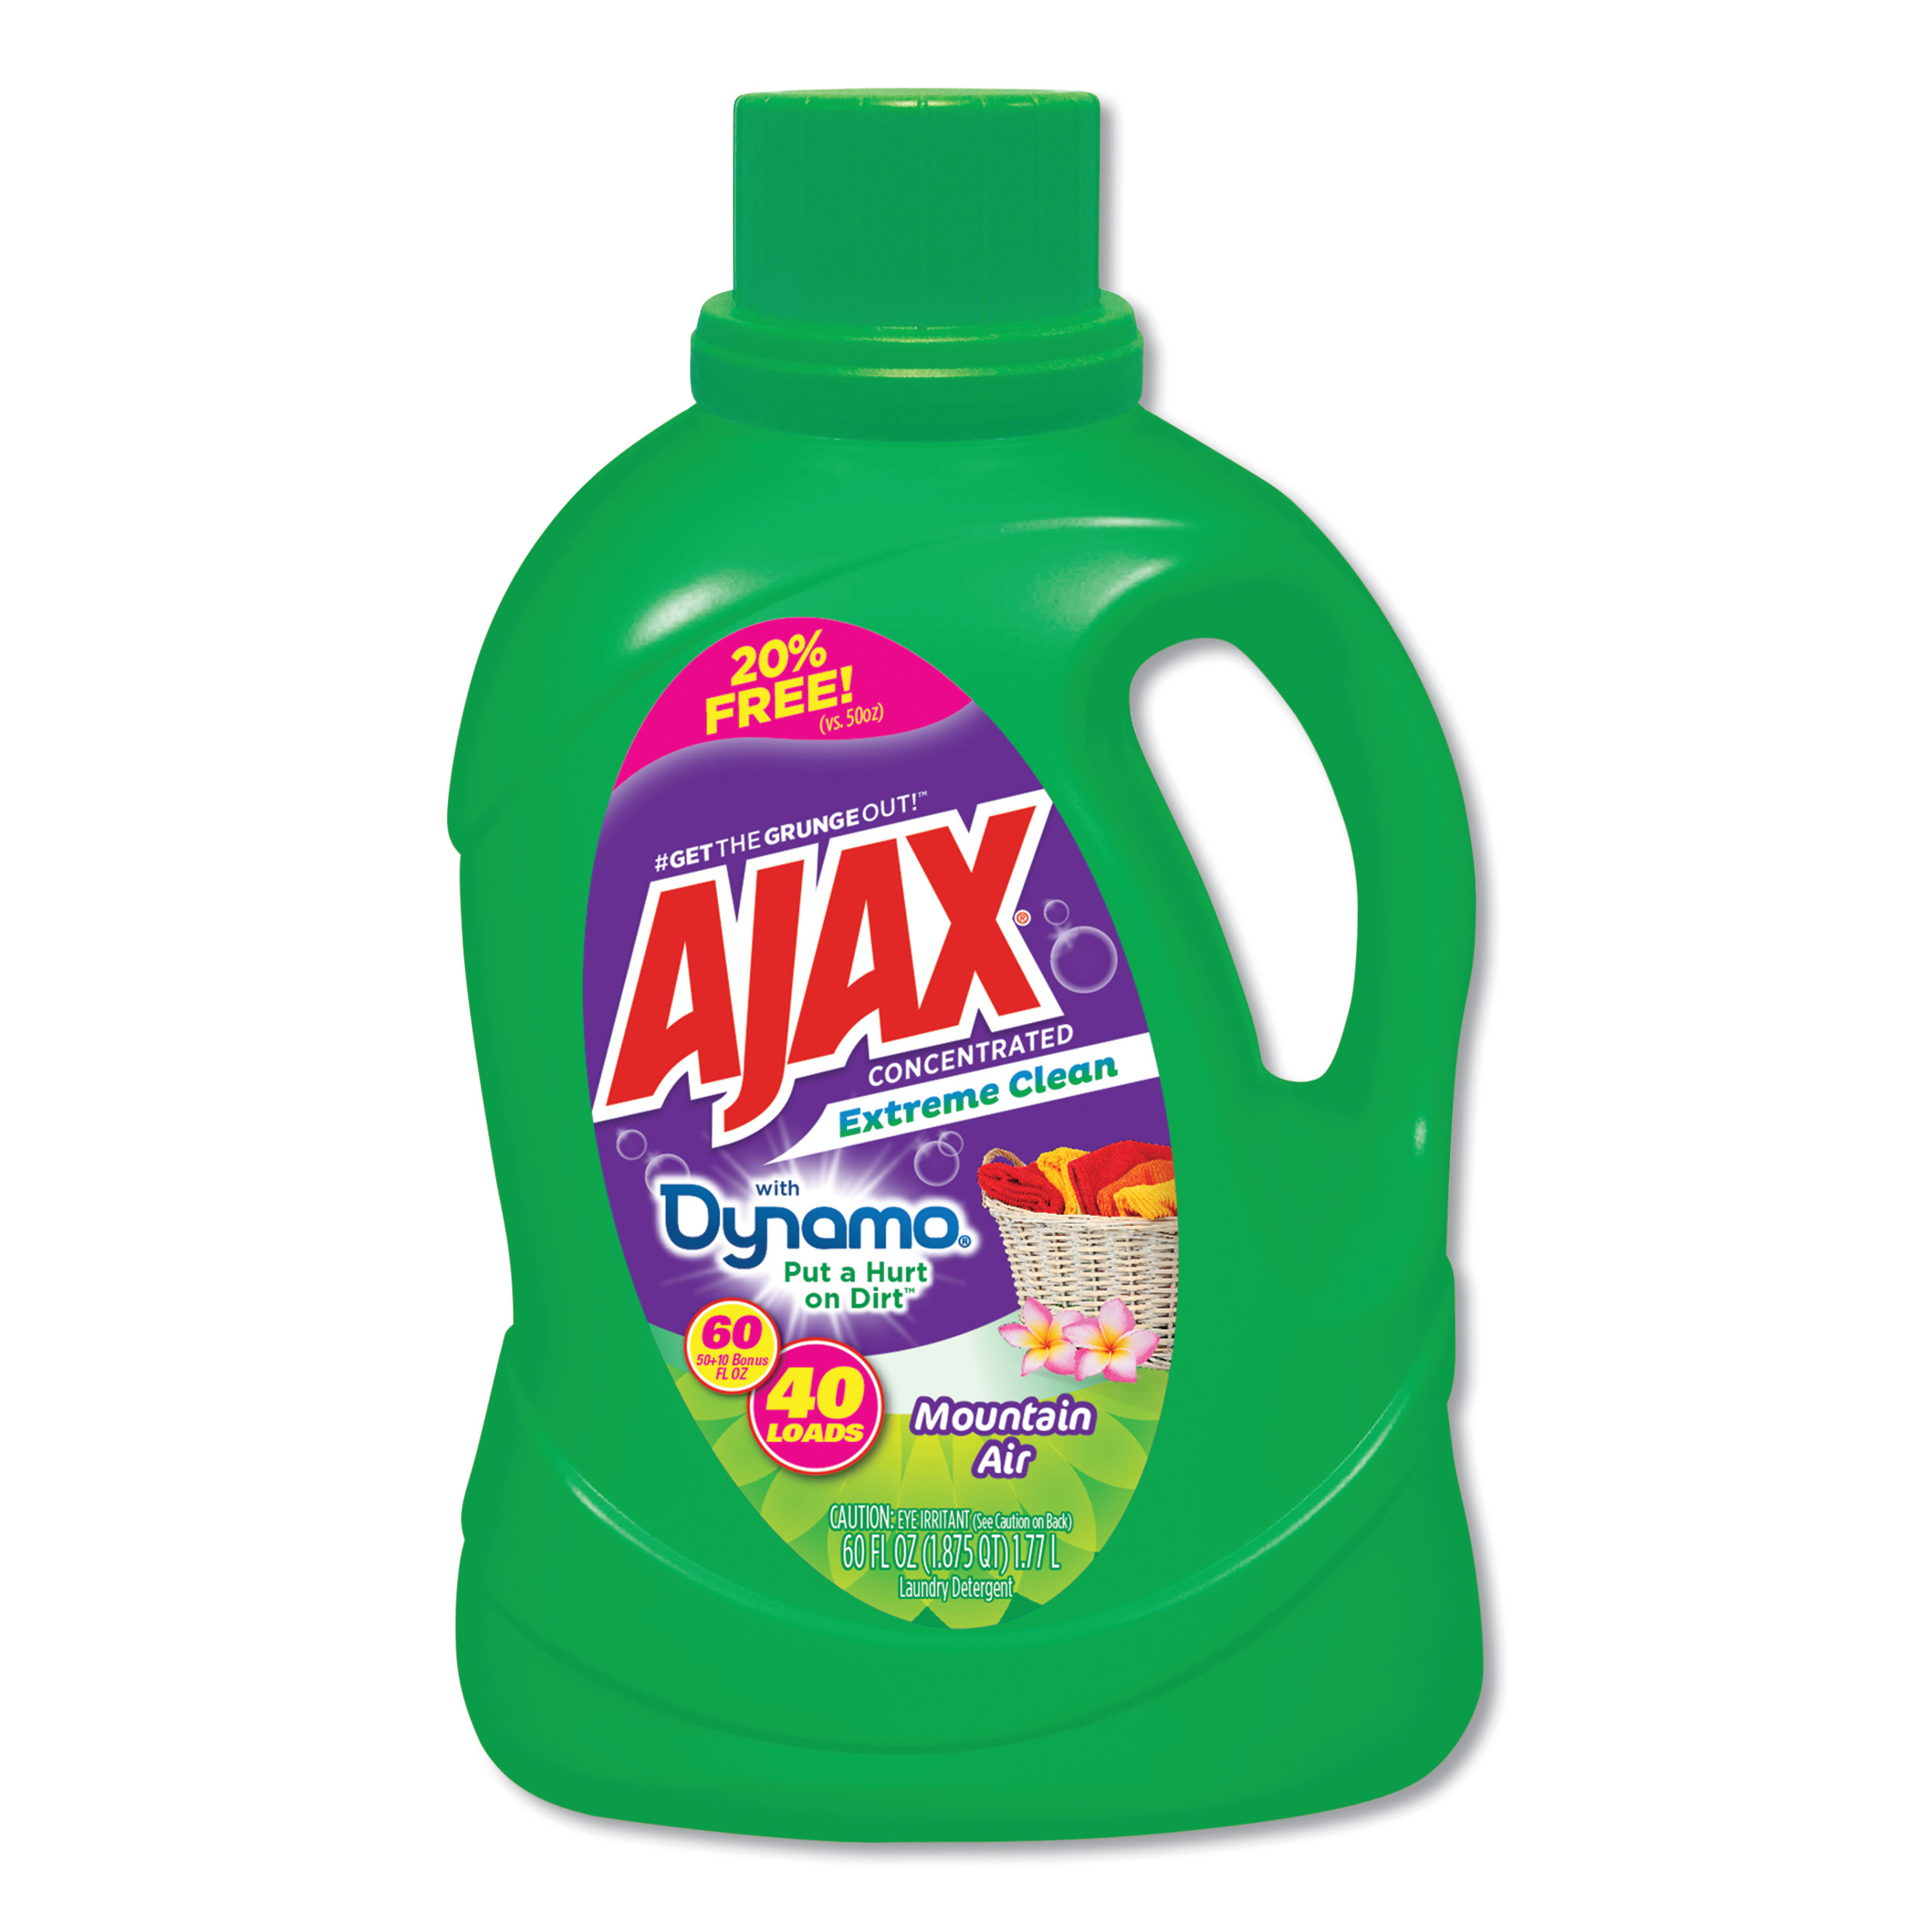 Laundry Detergent Liquid, Extreme Clean, Mountain Air Scent, 40 Loads, 60 oz Bottle, 6/Carton